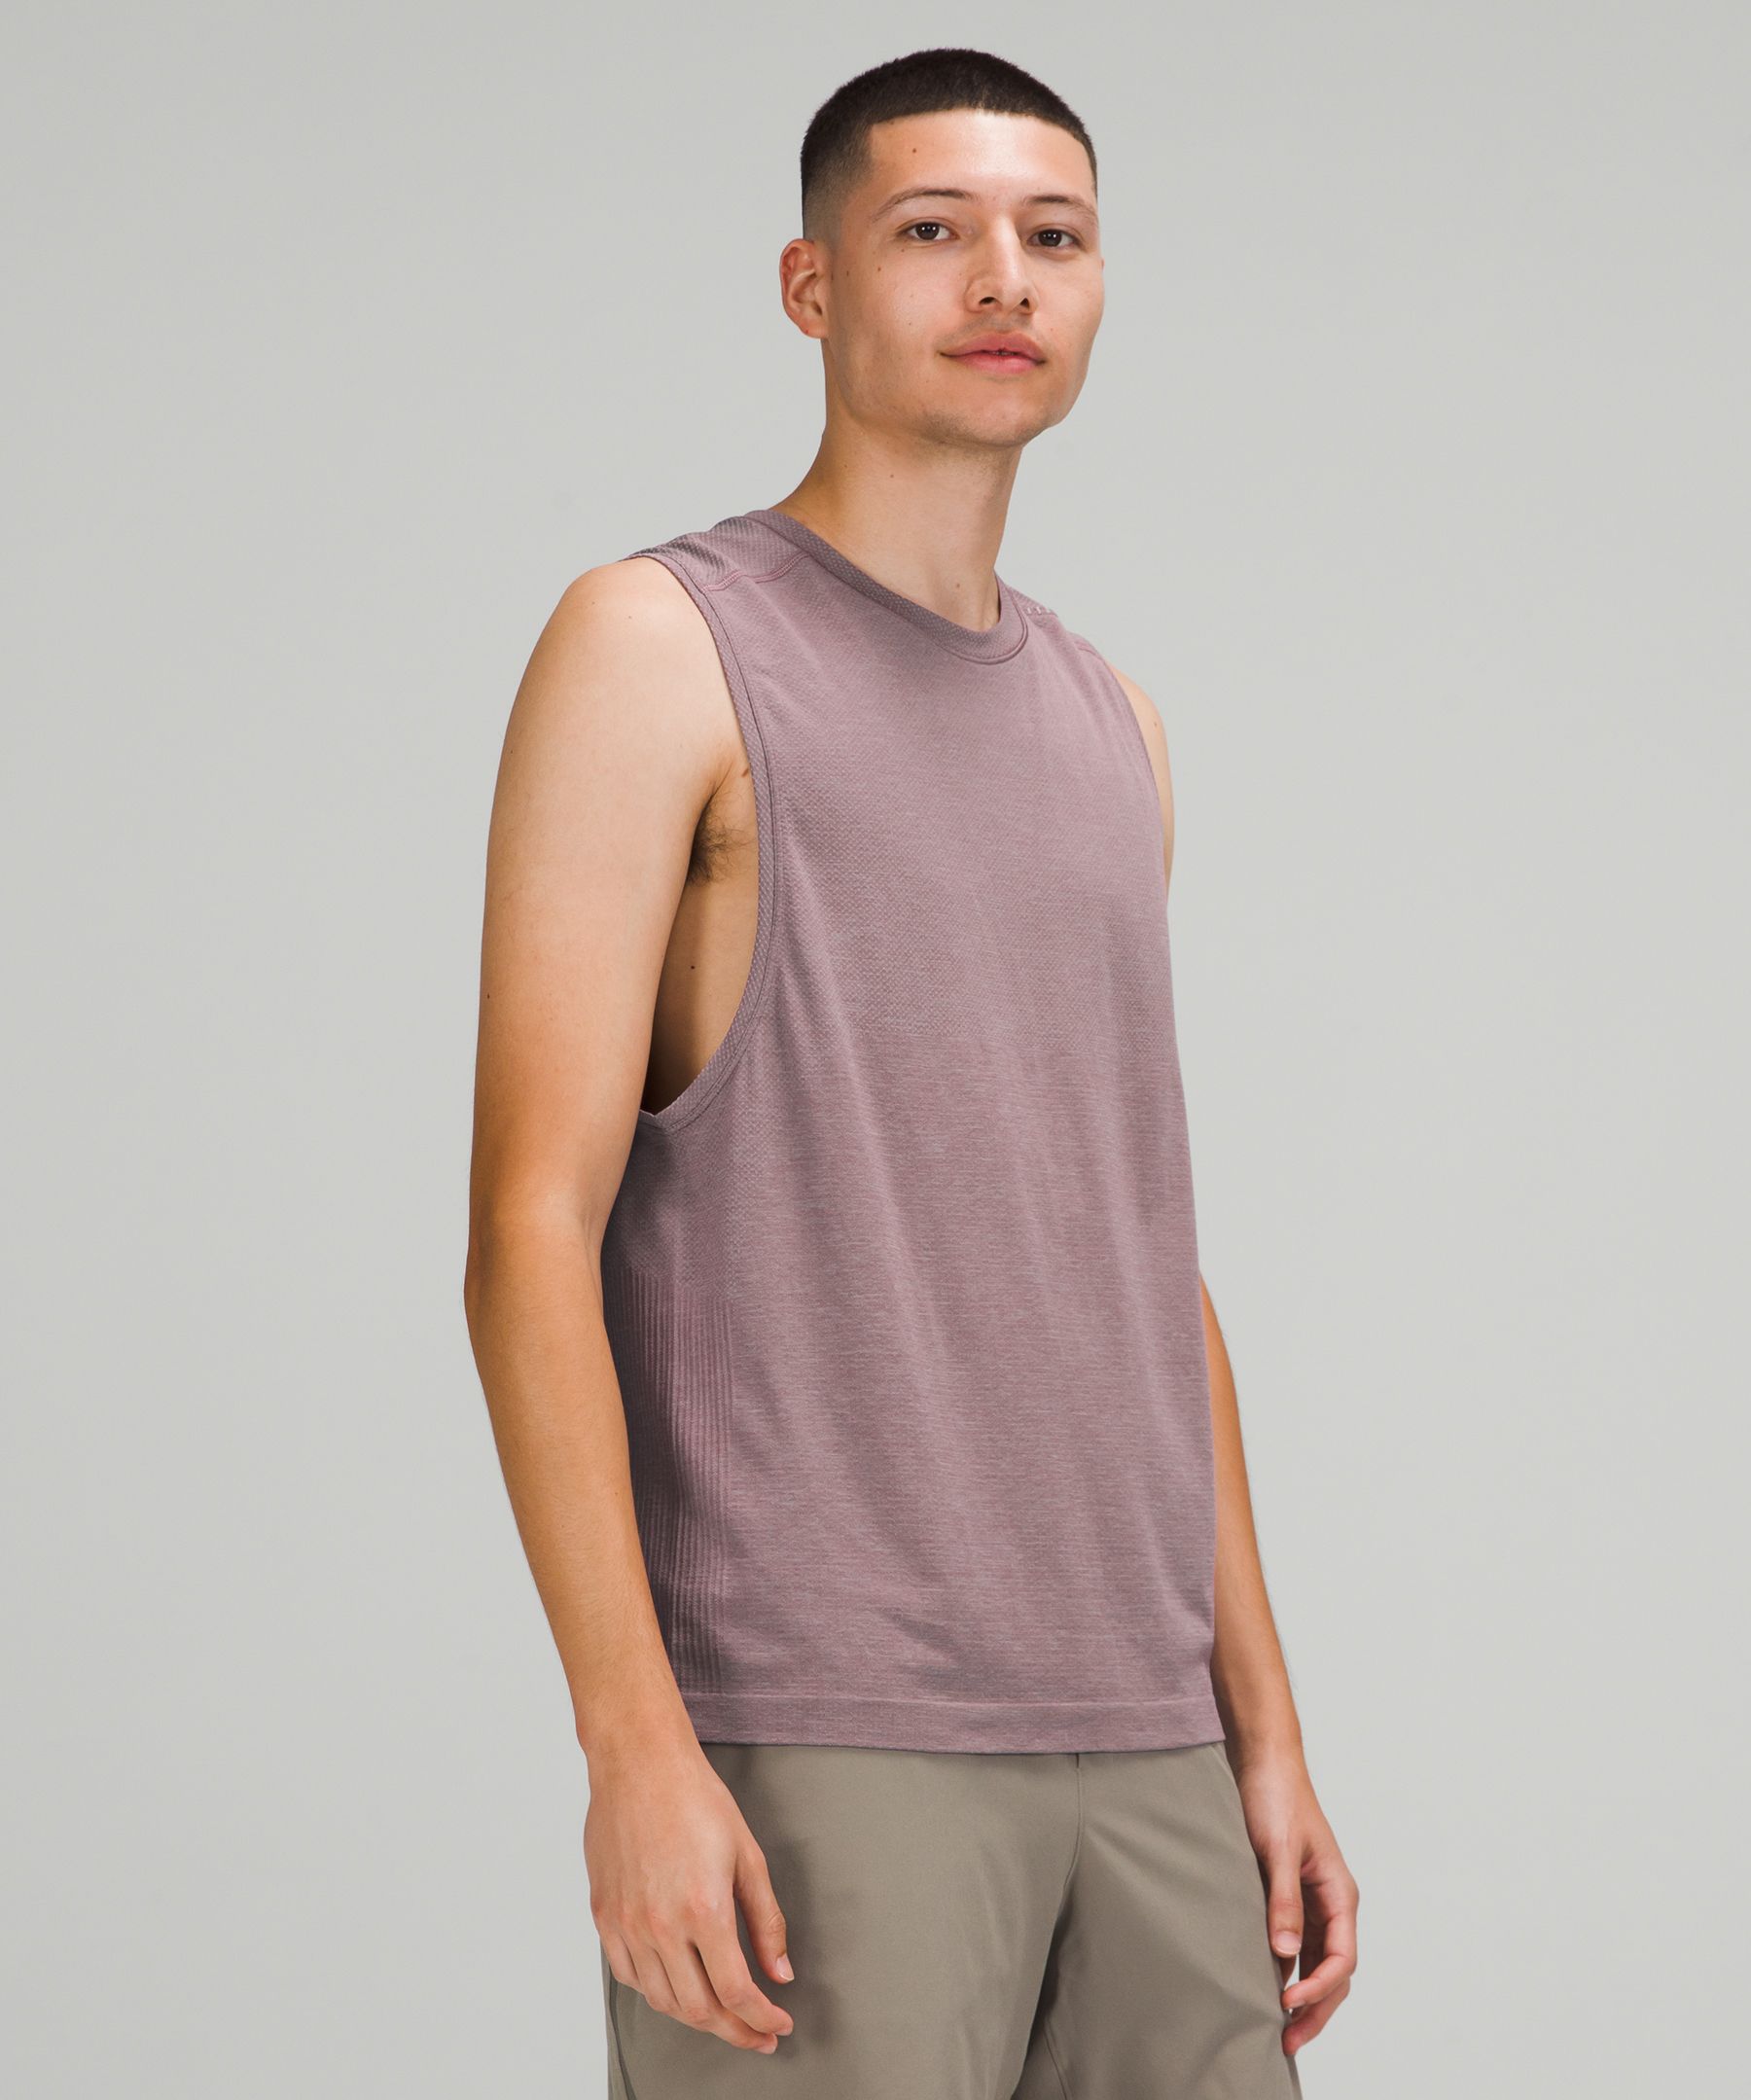 Metal Vent Tech Sleeveless Shirt, Men's Sleeveless & Tank Tops